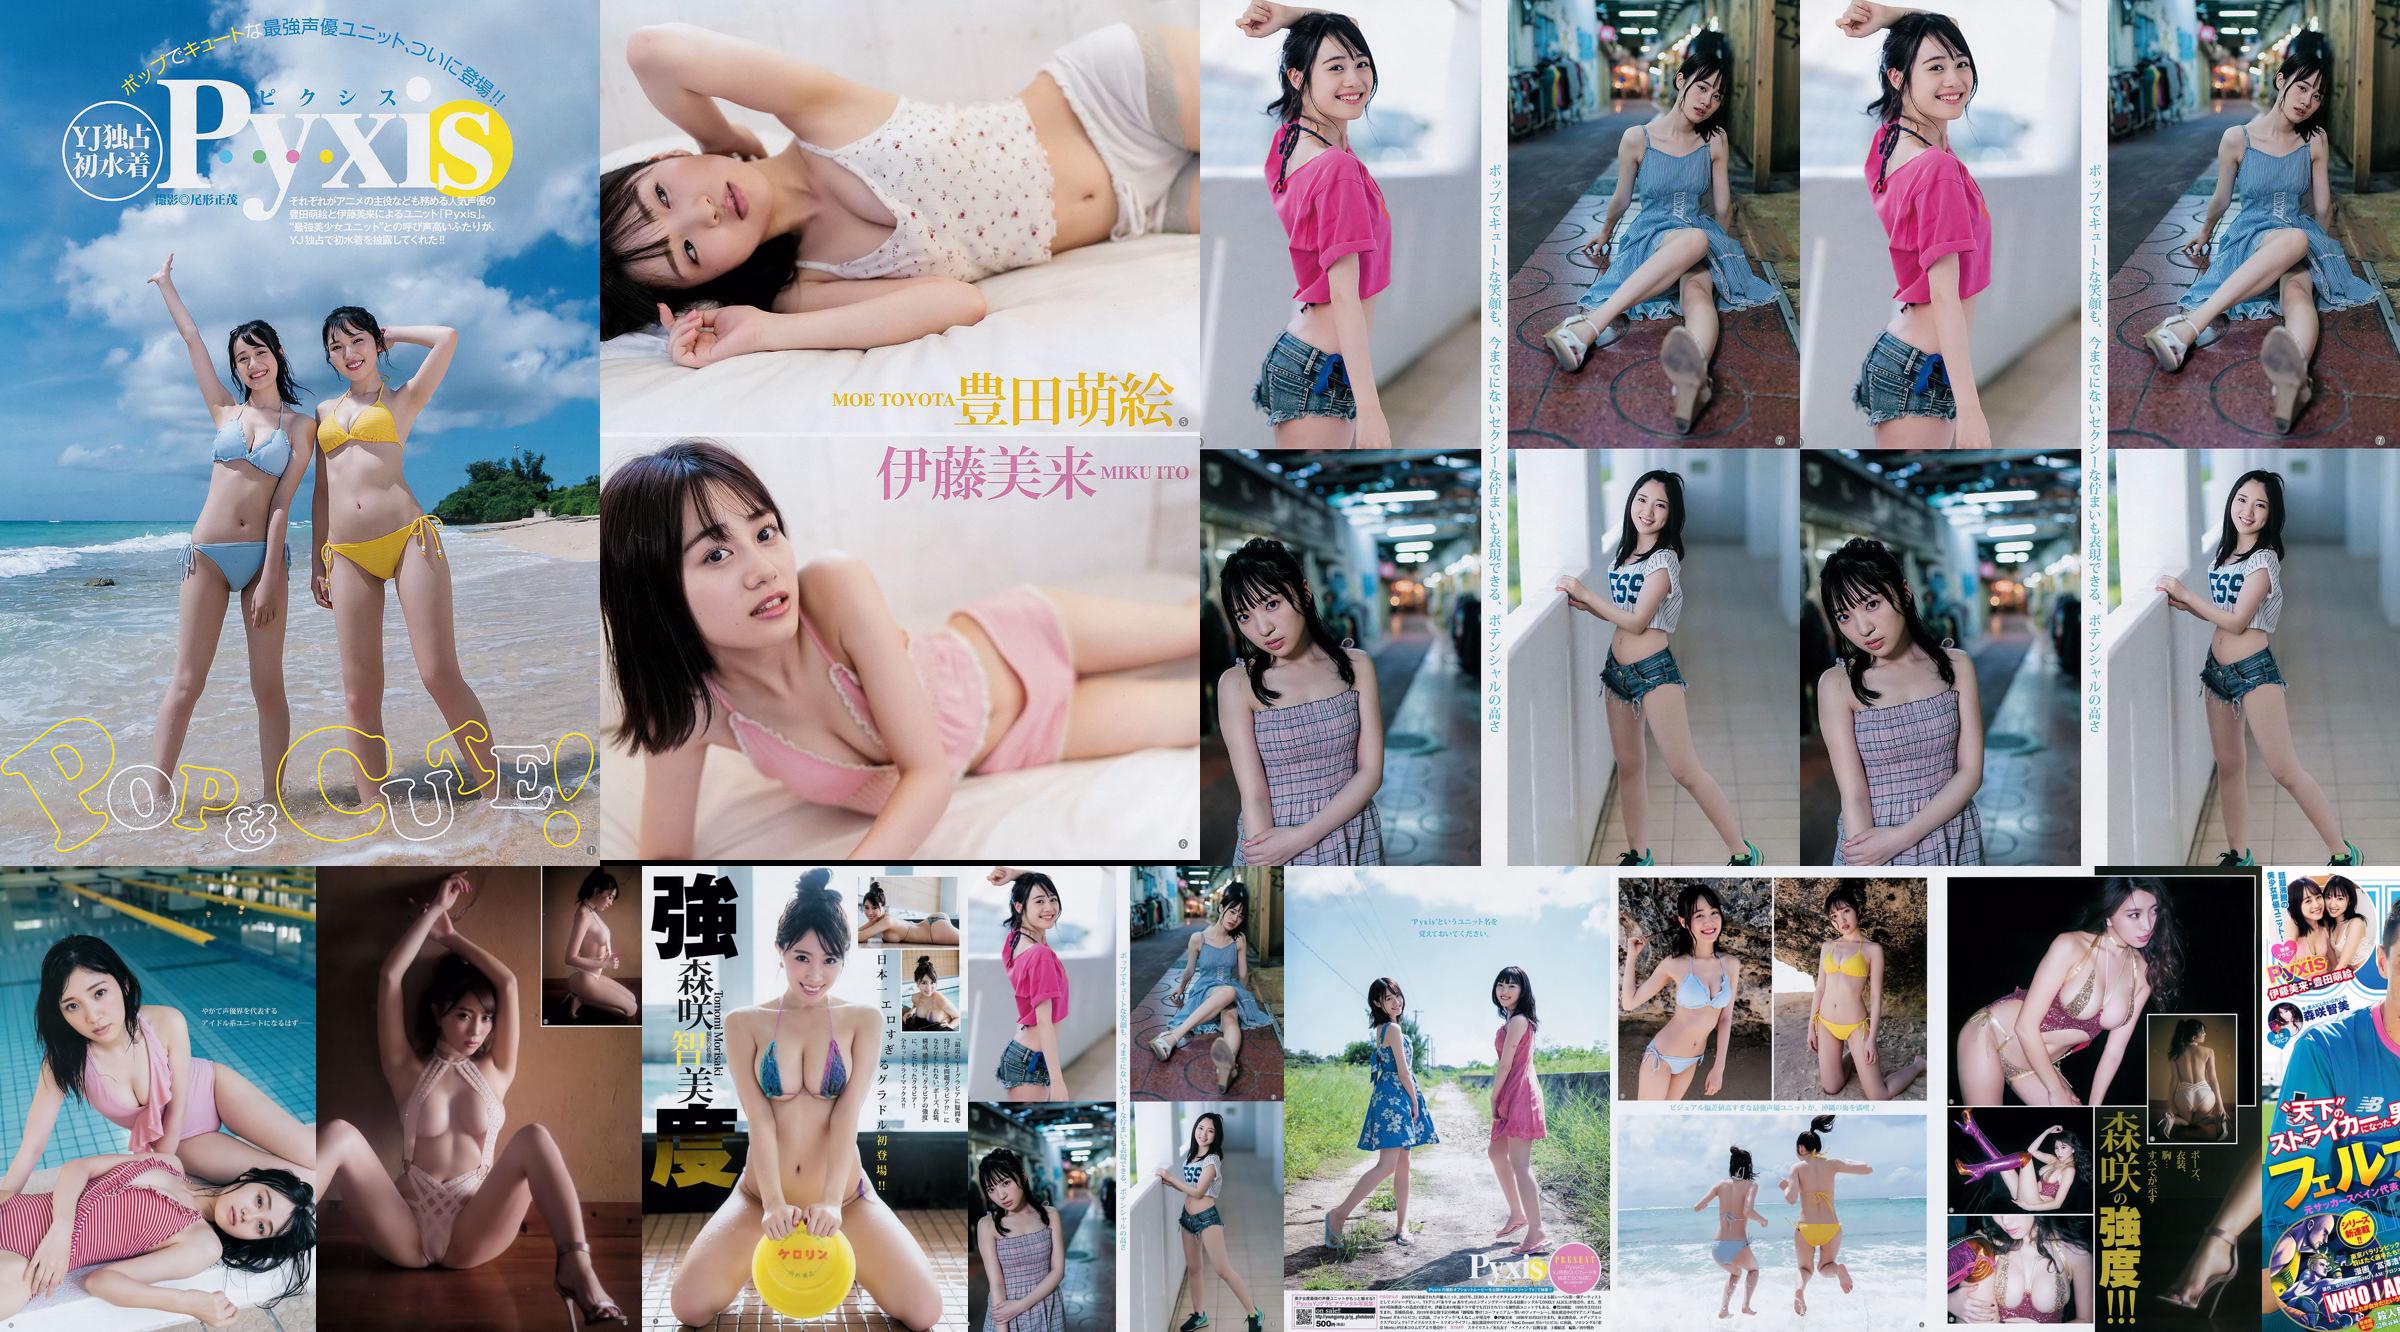 [Beautyleg] NO.851 Leg Model Miki Beauty Legs No.910885 Página 1